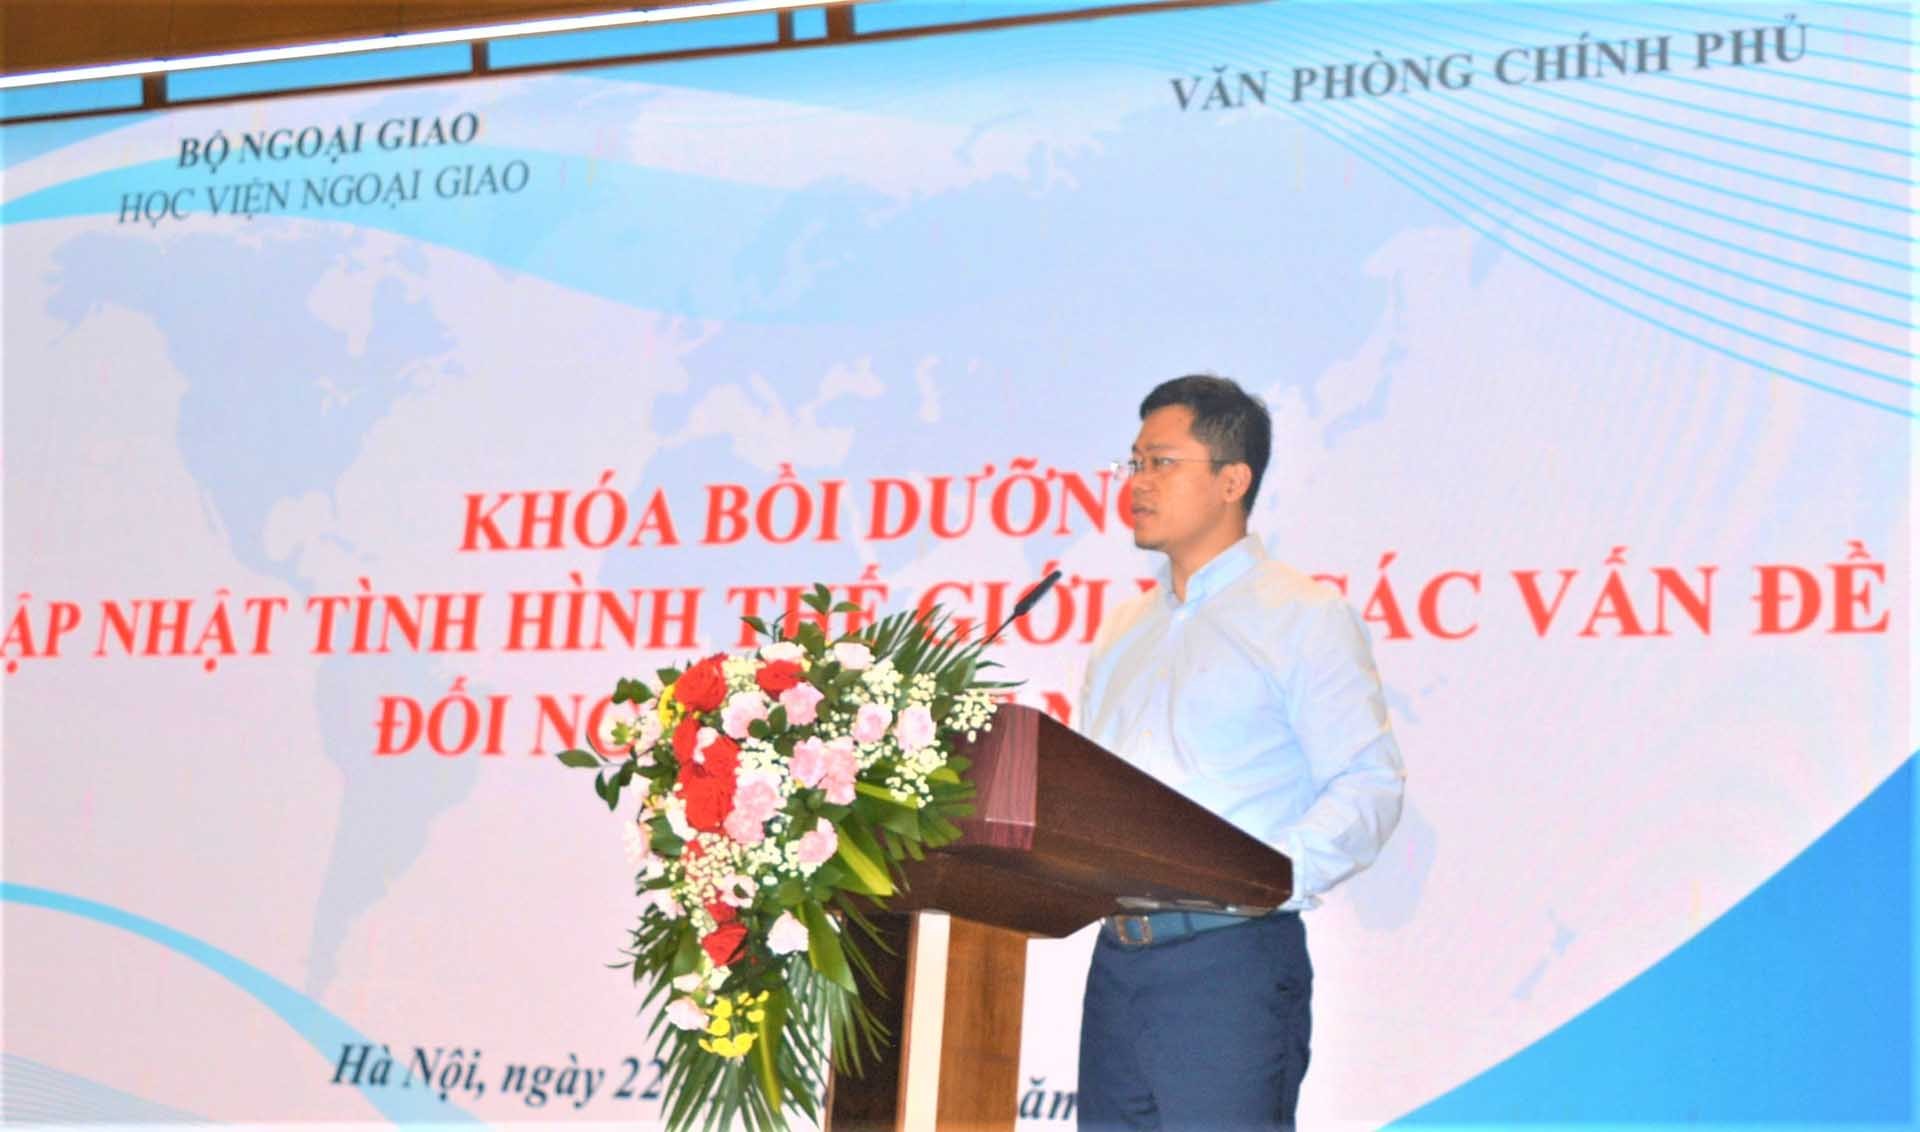 Ông Nguyễn Hoàng Tuấn, Phó Vụ trưởng, Vụ Tổ chức Cán bộ, Văn phòng Chính phủ phát biểu.